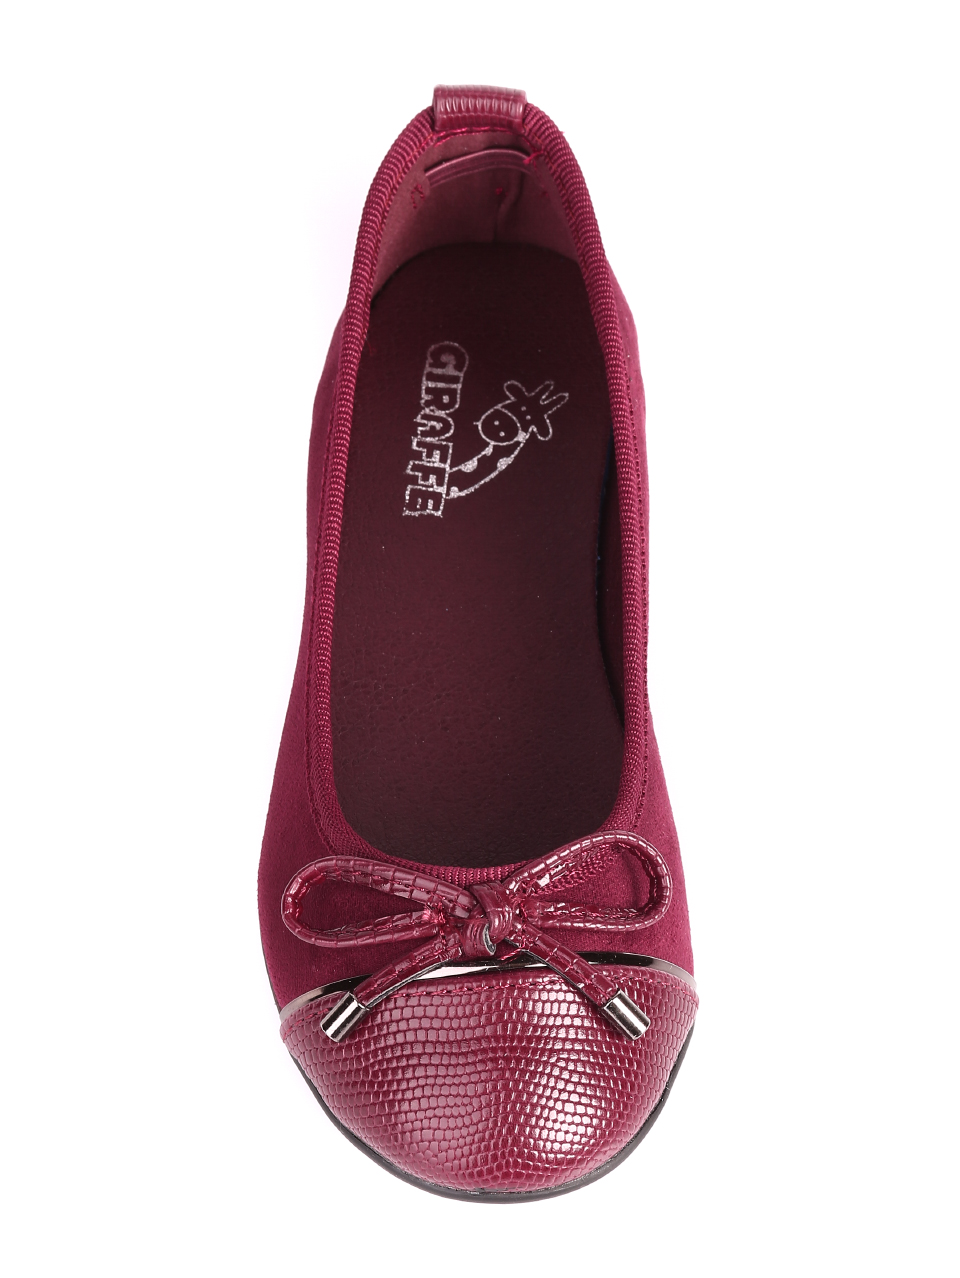 Ежедневни детски обувки в червено 18L-20584 burgundy